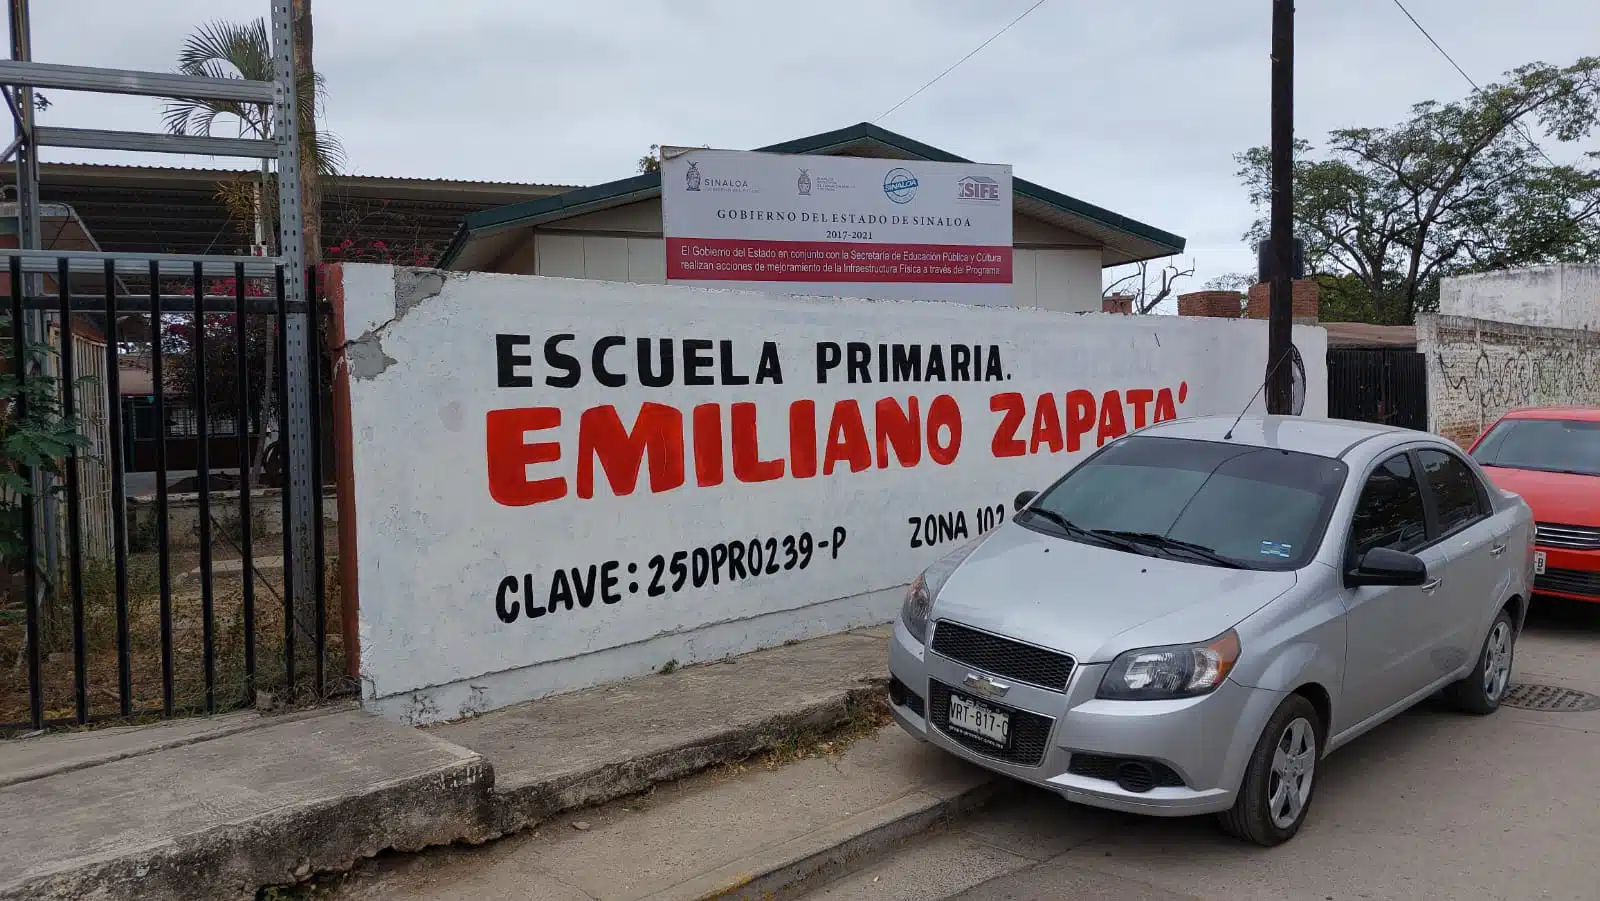 ¡Los salones “arden” de calor! Ladrones dejan sin luz la escuela primaria “Emiliano Zapata” en Mazatlán